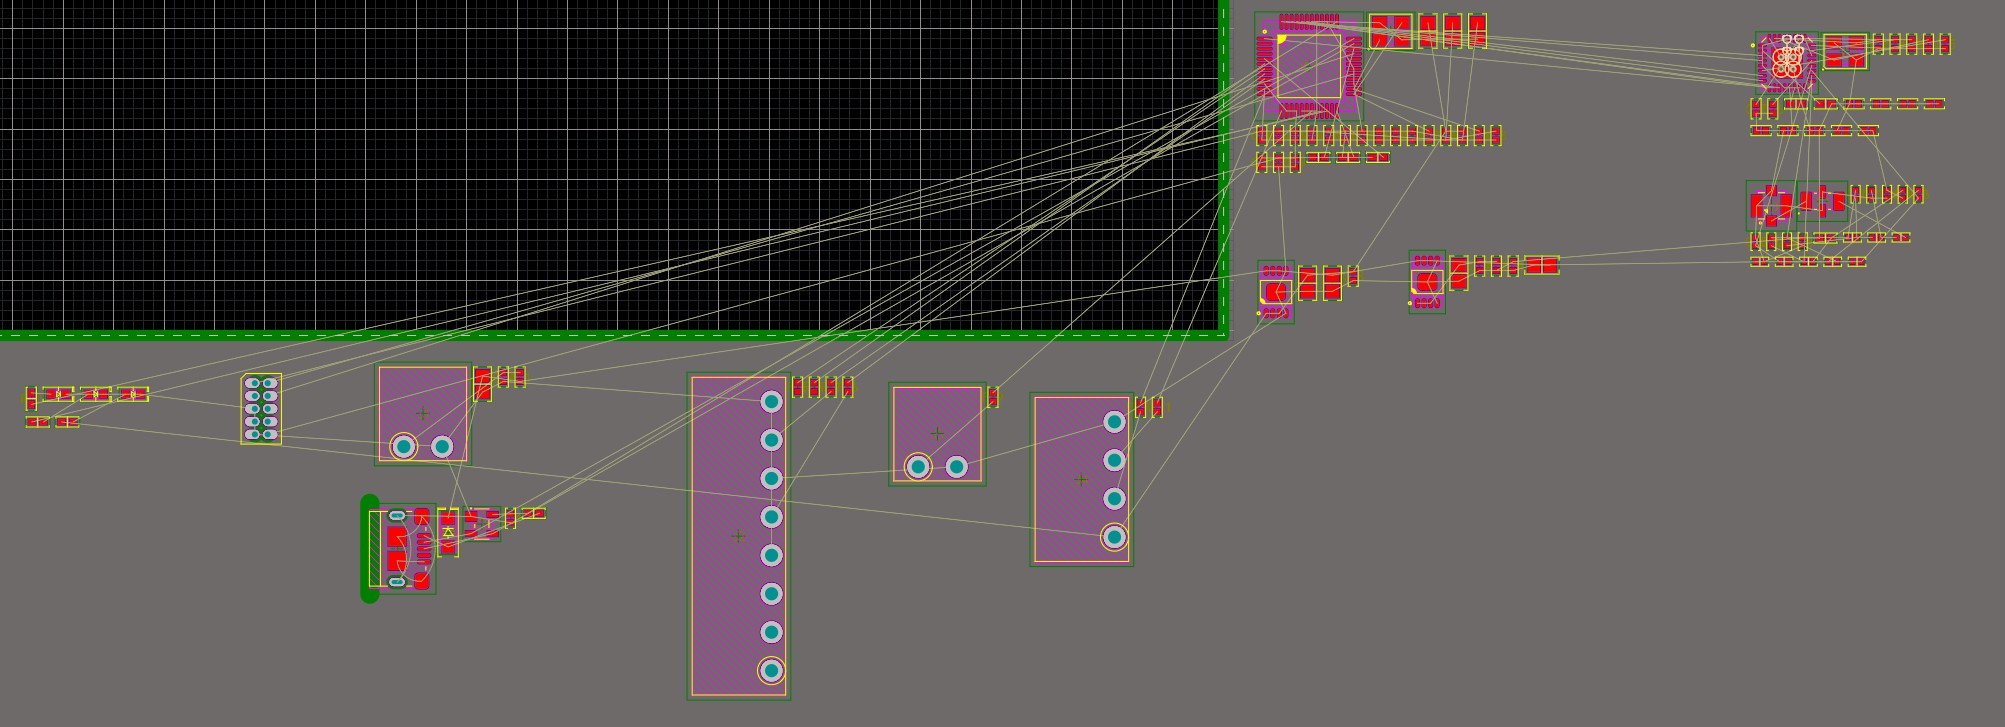 Altium Designer 20 screenshot showing components arranged in logical blocks 